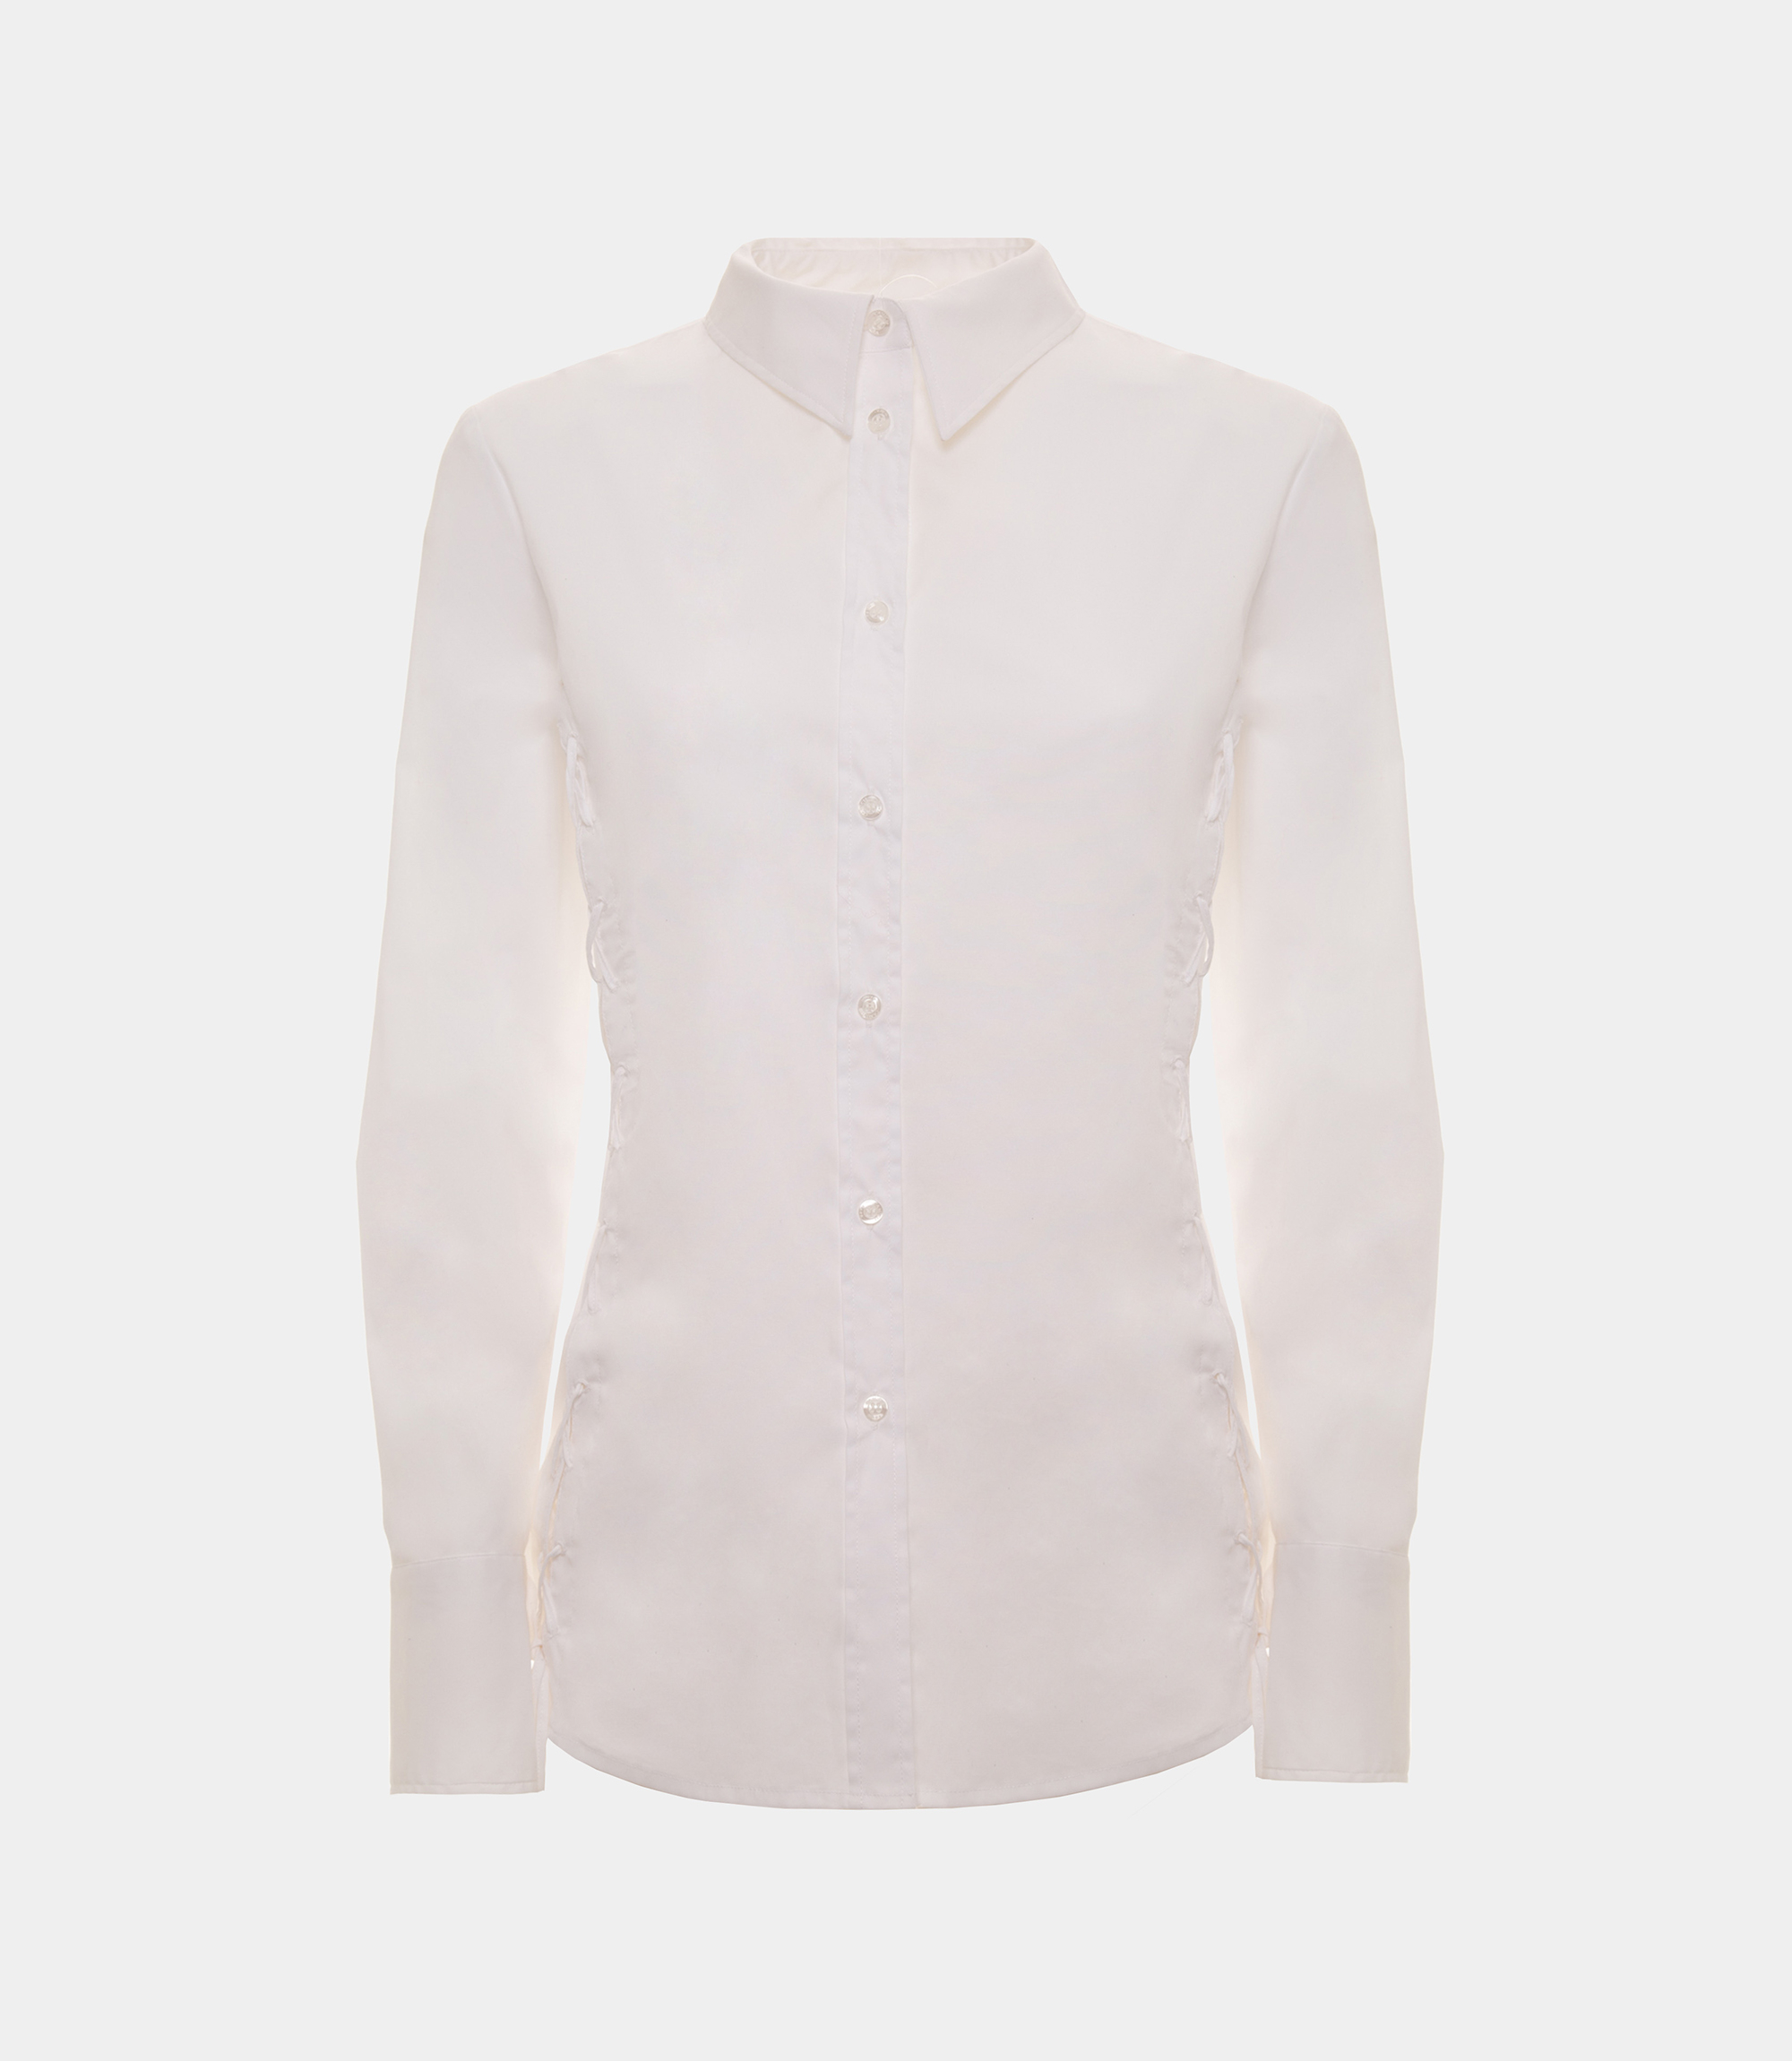 Criss cross shirt - White - NaraMilano